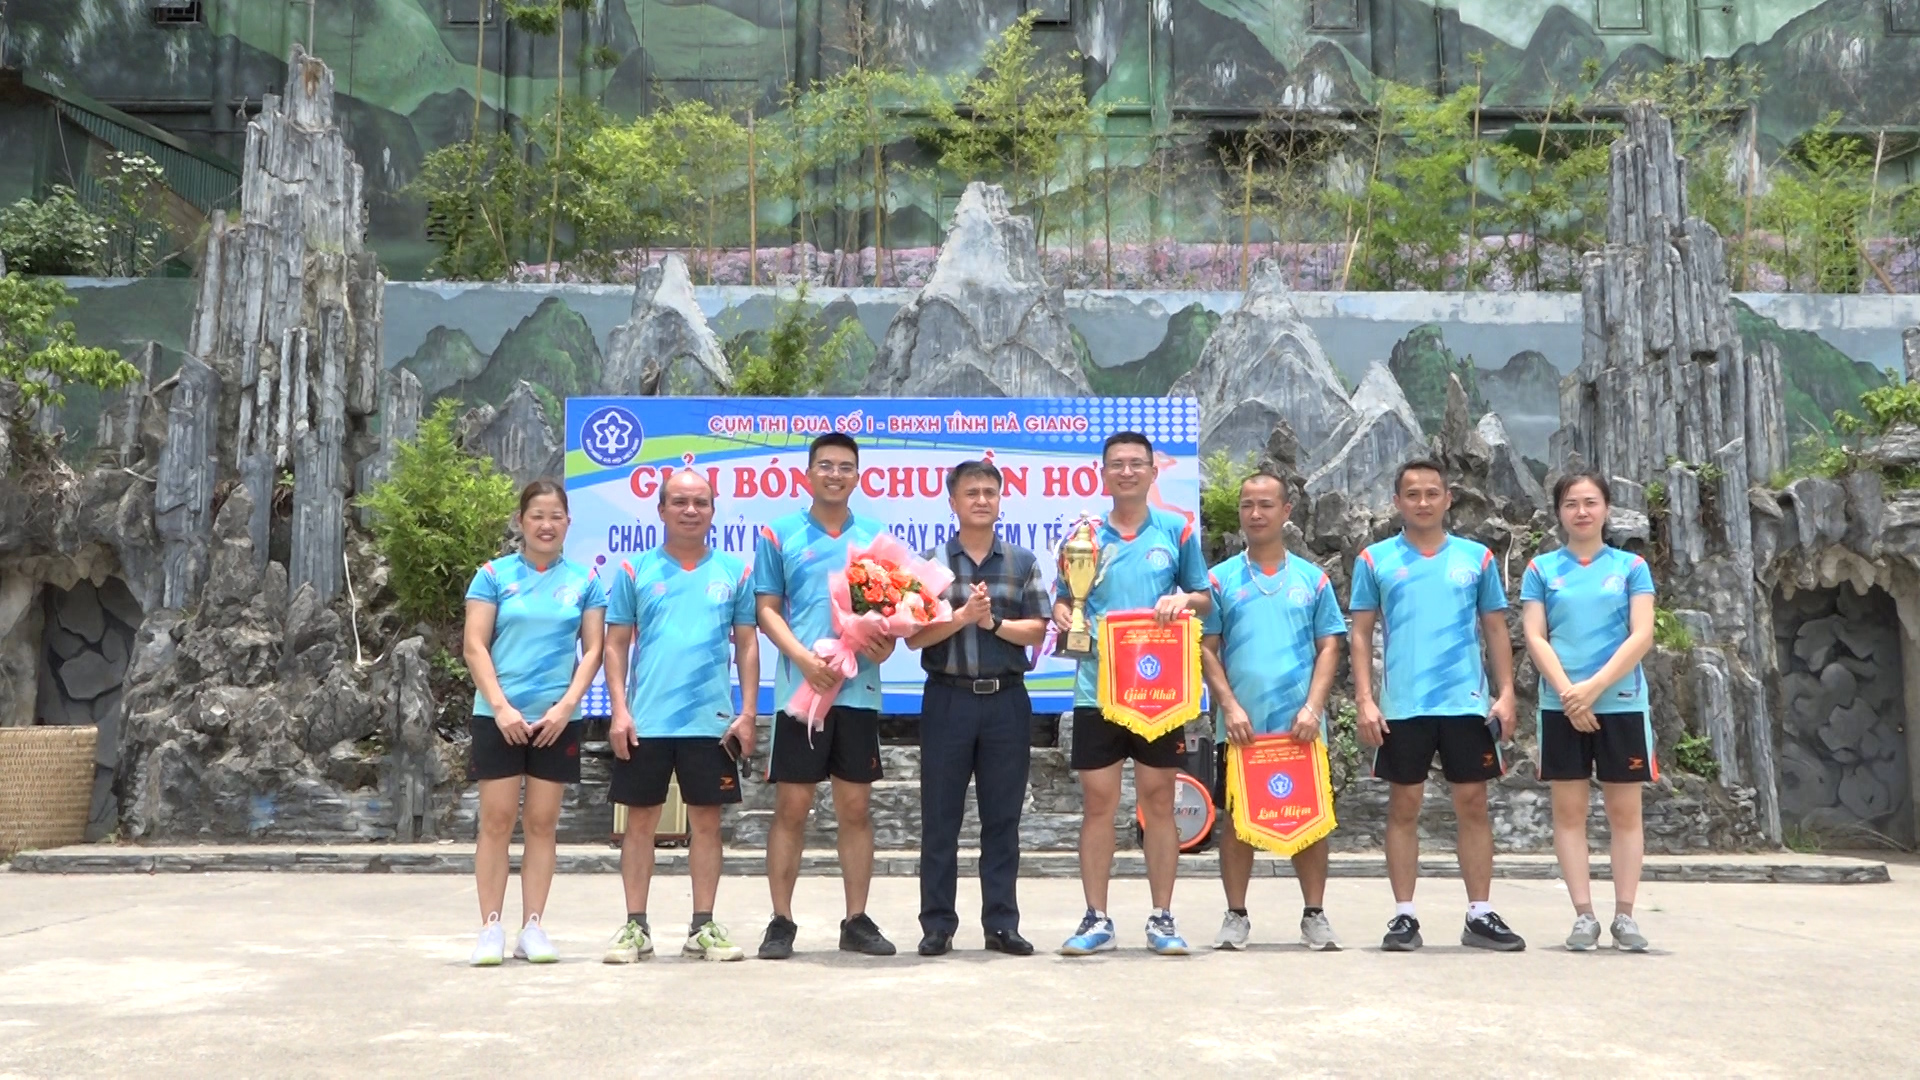 Cụm thi đua số 1 Bảo hiểm xã hội tỉnh Hà Giang tổ chức giải bóng chuyền hơi năm 2023